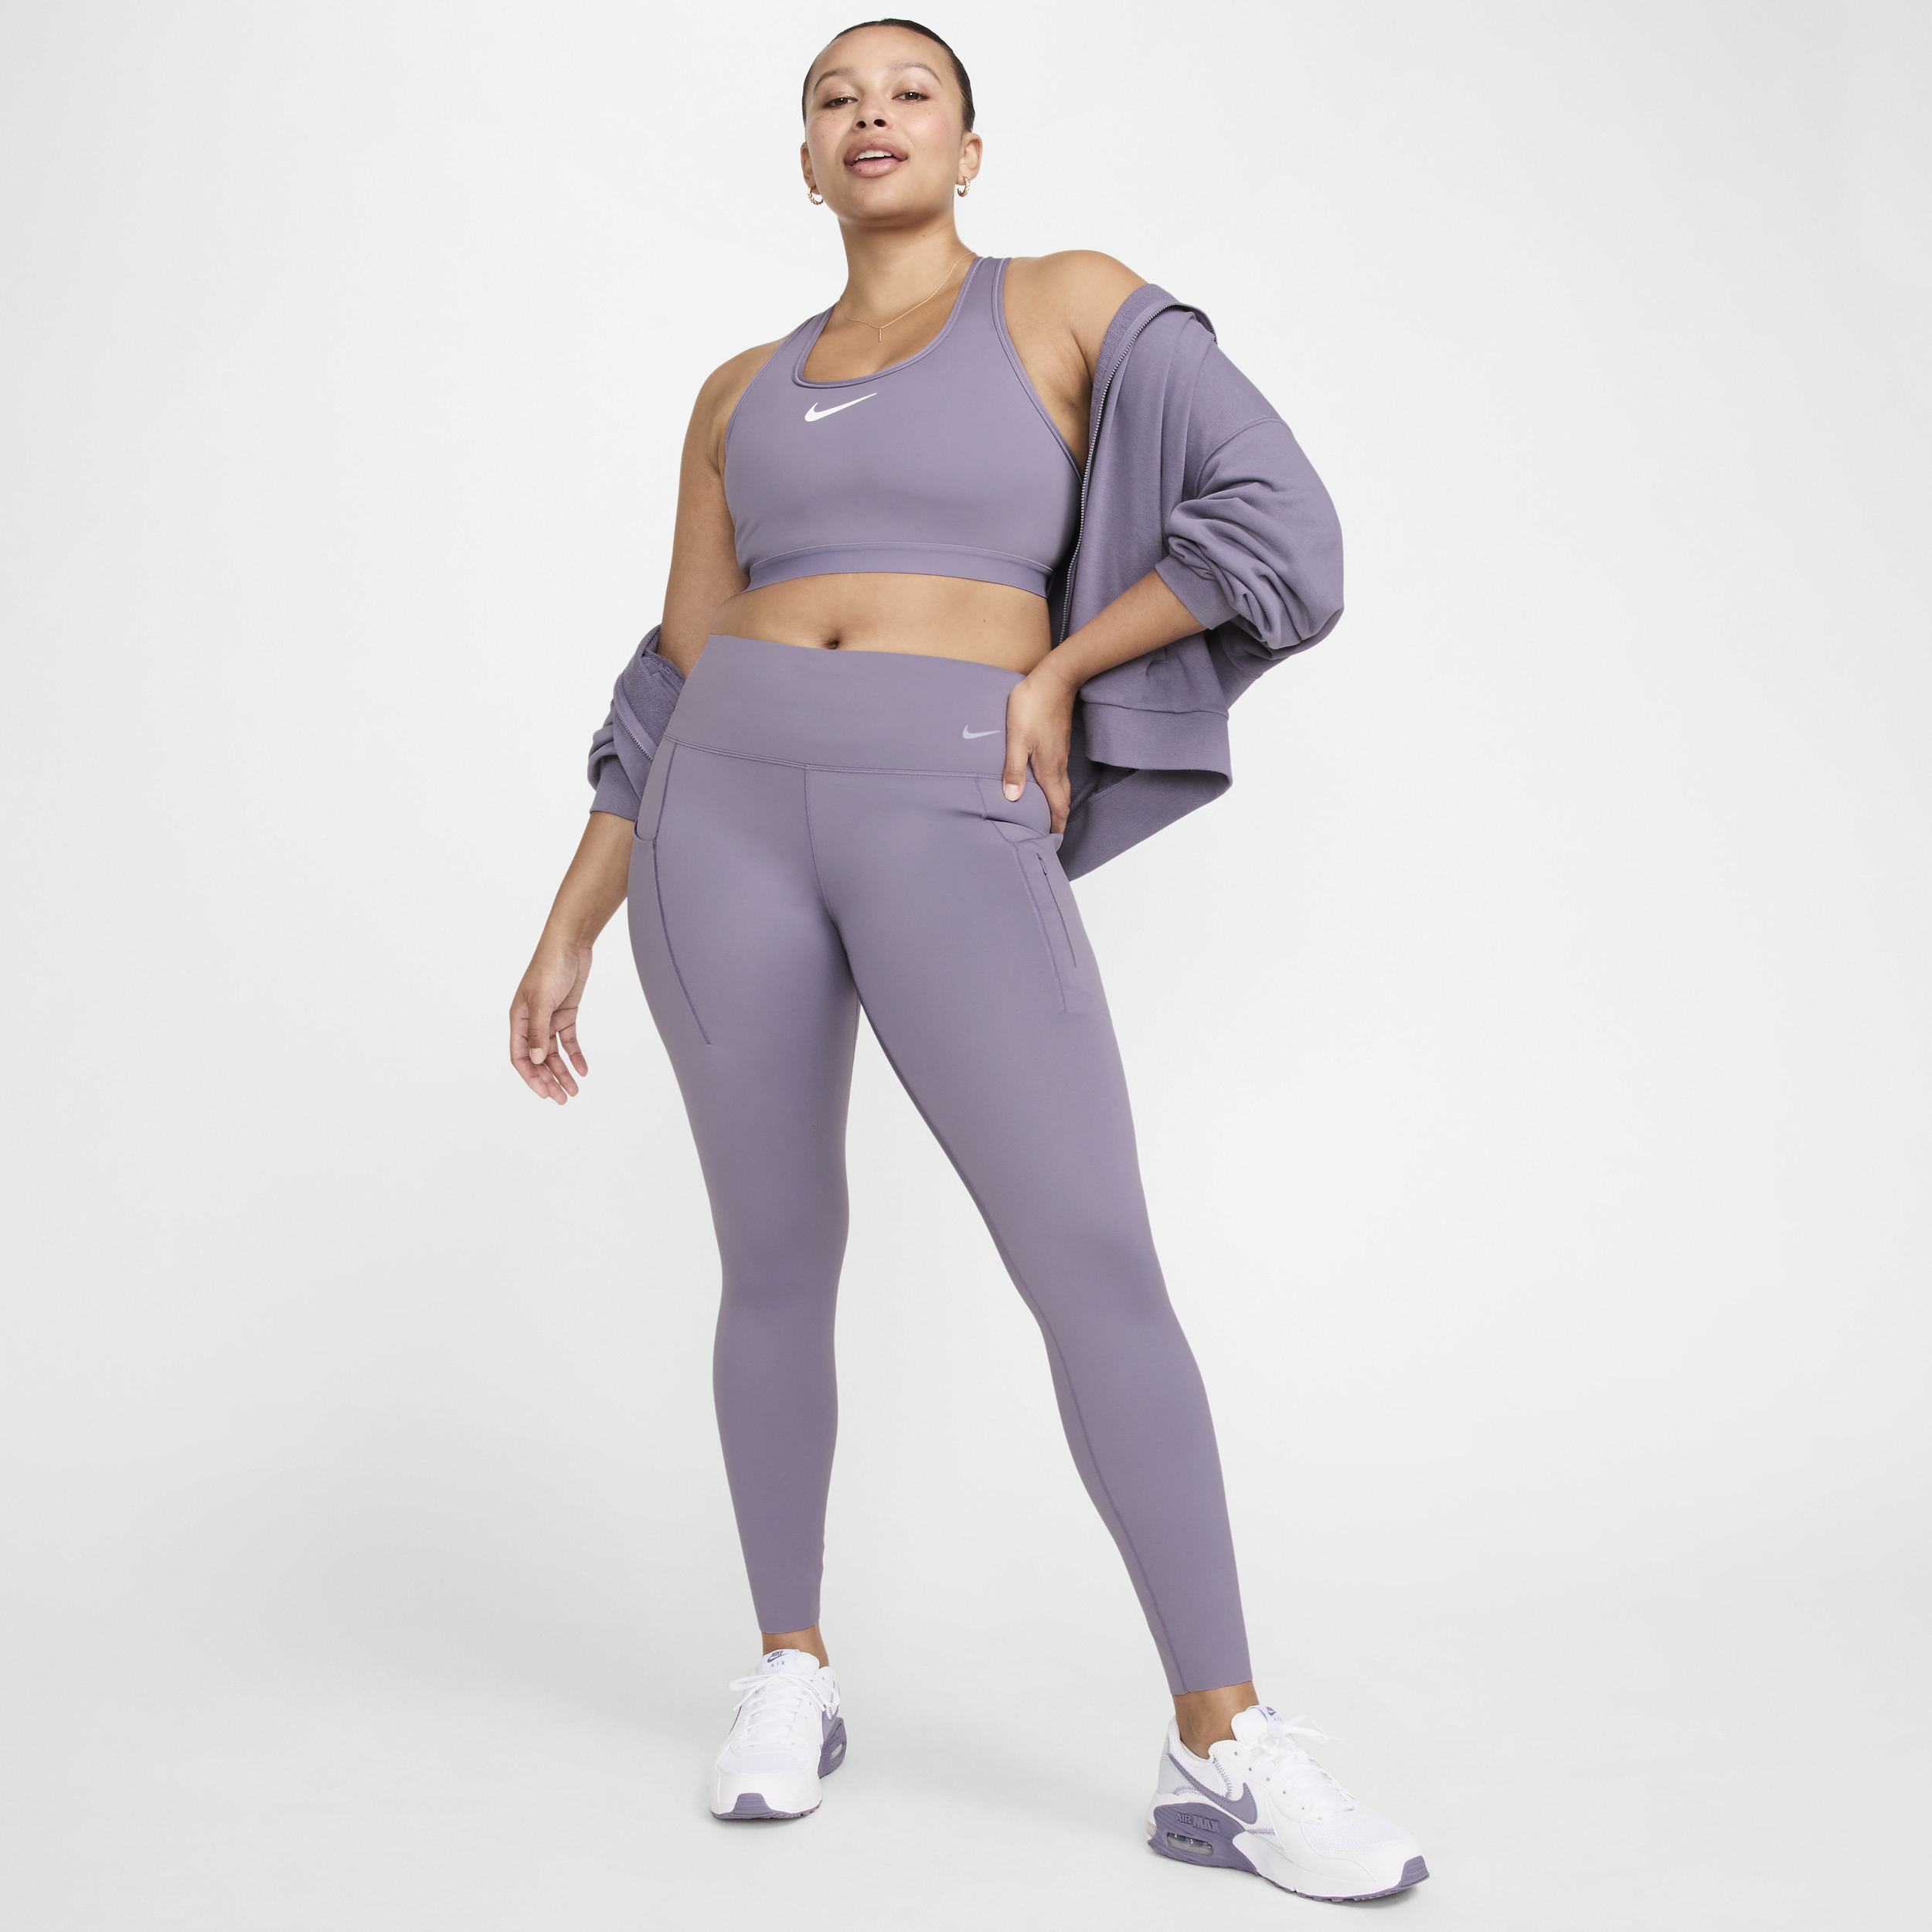 Lange Nike Go-leggings med højt støtteniveau, mellemhøj talje og lommer til kvinder - lilla